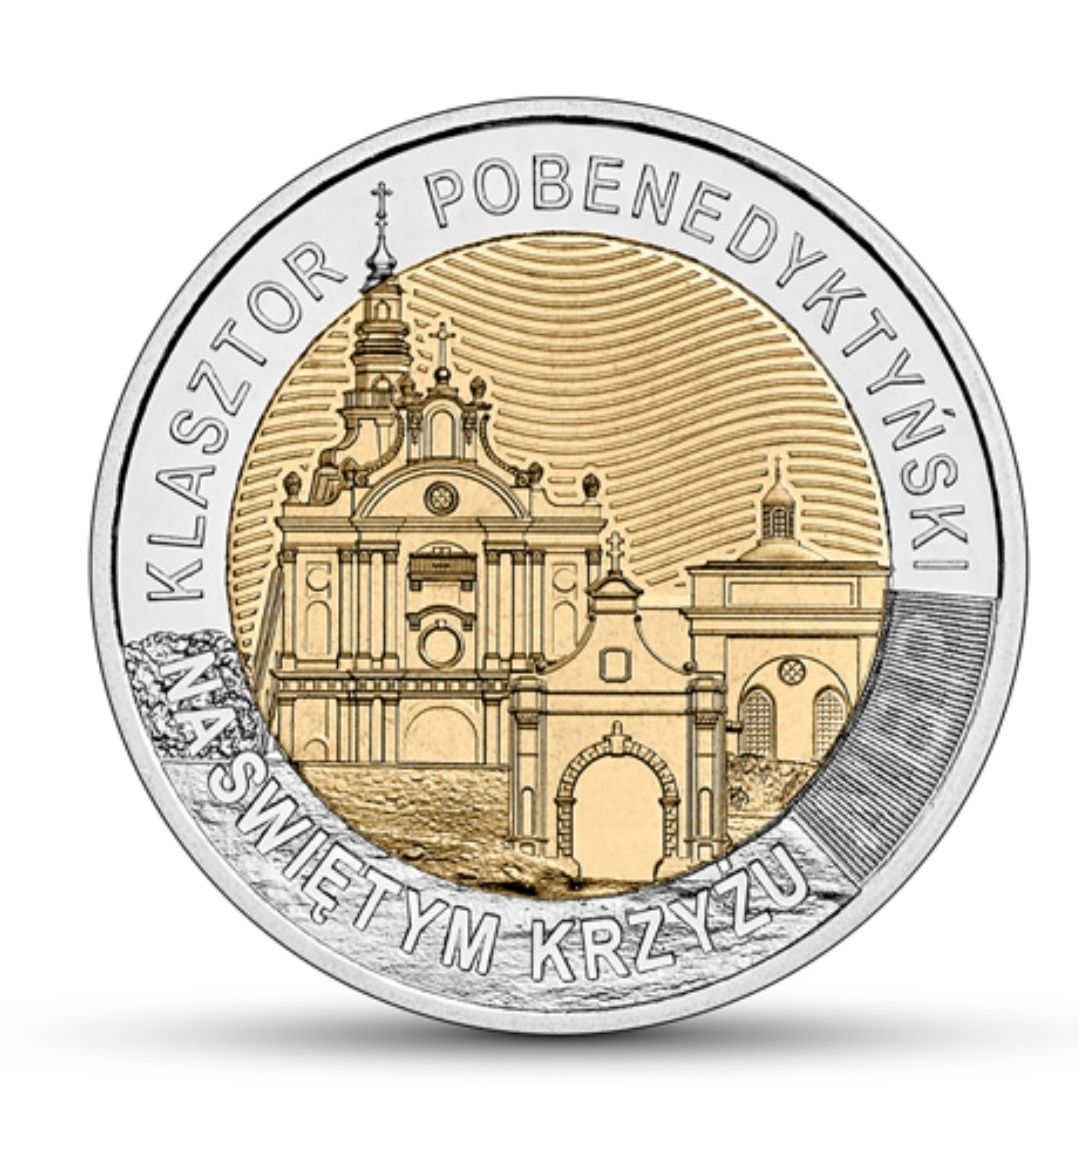 Moneta 5 zł Klasztor Pobenedyktynski